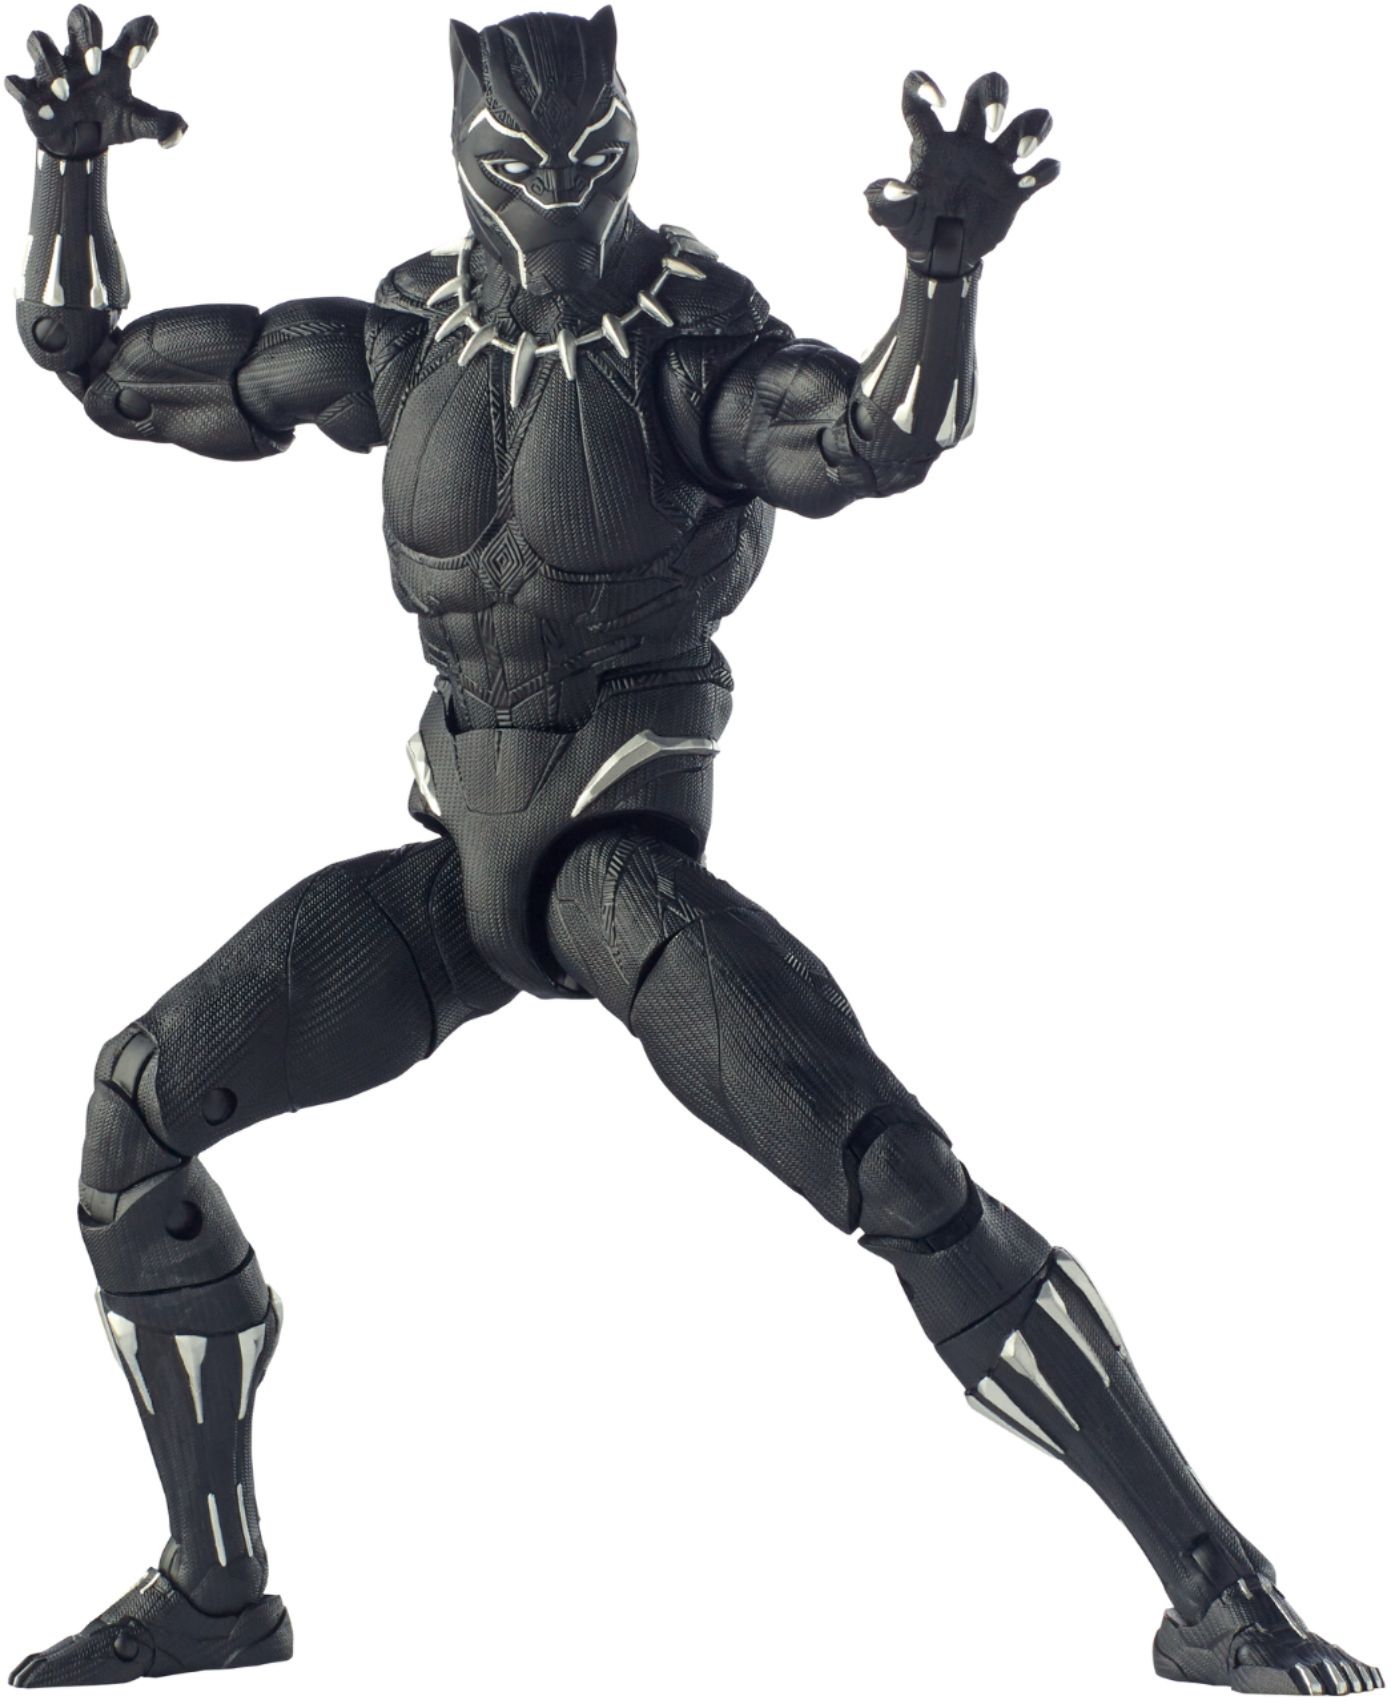 marvel legends black panther figure